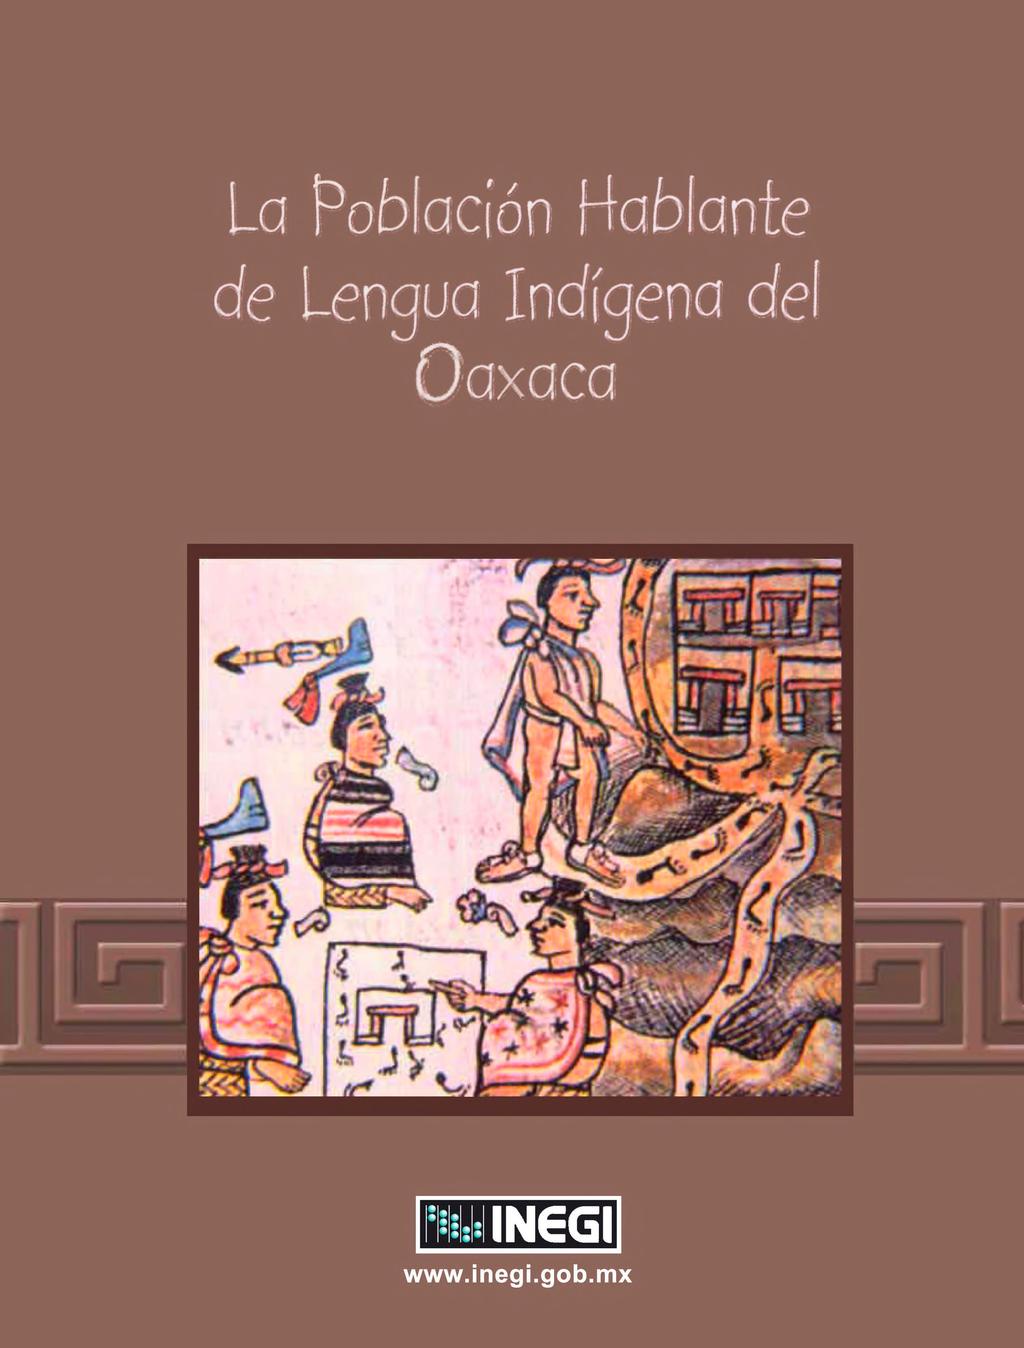 Poblacion Hablante -engua Indfgena del Oaxaca